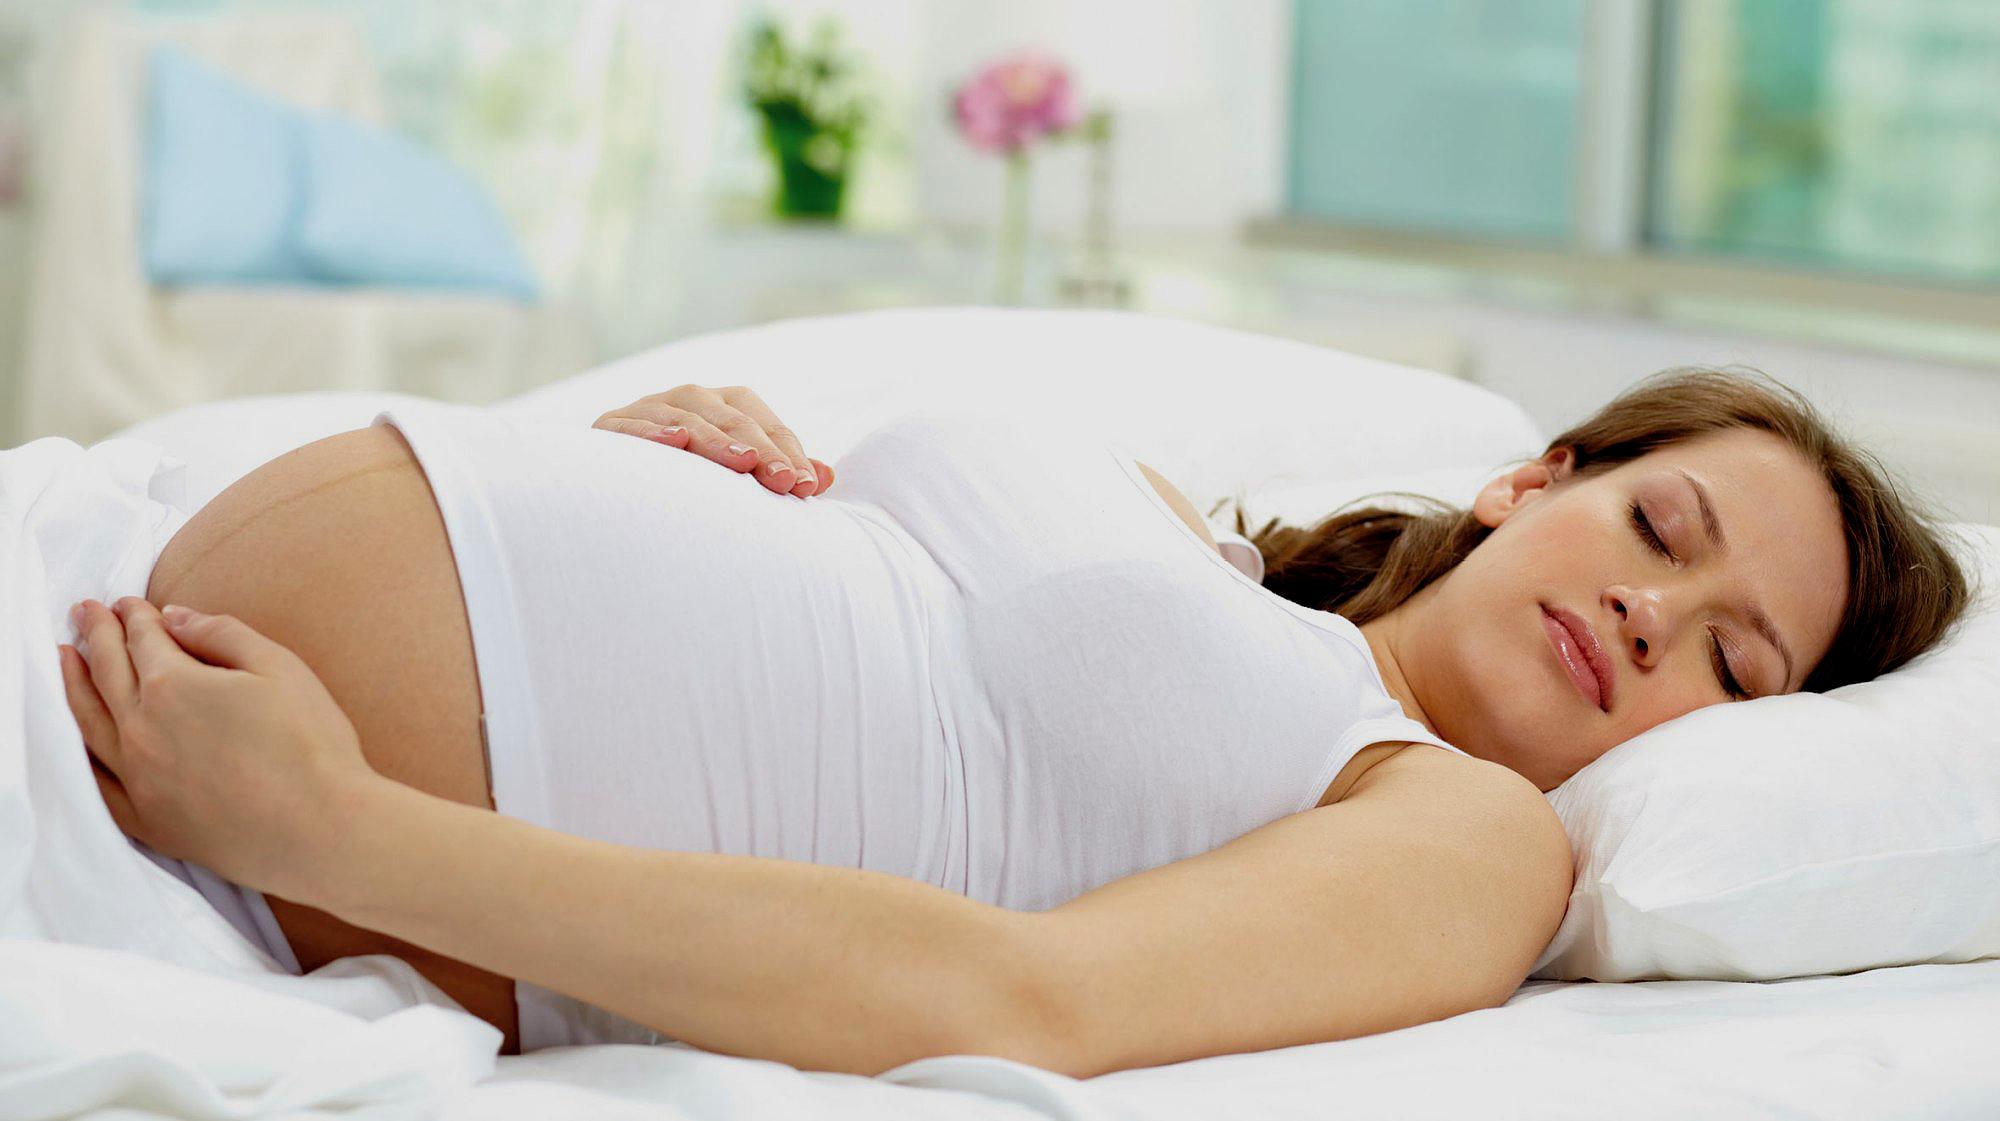 【奇趣知识】孕期梦境和生男生女有关系？其实这是人体正常生理现象 -MamaClub – MAMACLUB